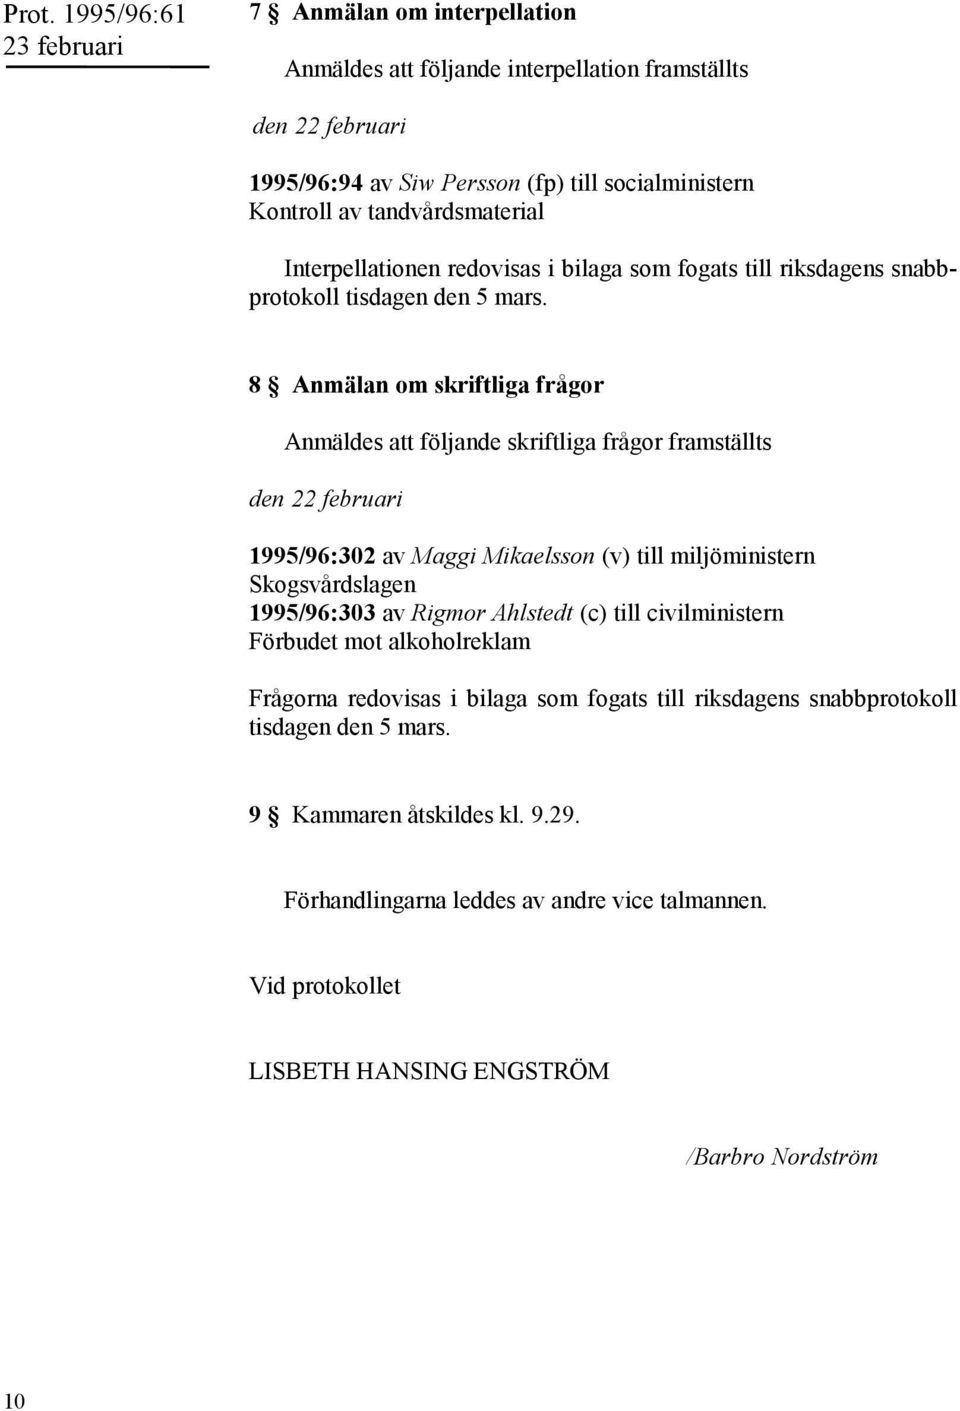 8 Anmälan om skriftliga frågor Anmäldes att följande skriftliga frågor framställts den 22 februari 1995/96:302 av Maggi Mikaelsson (v) till miljöministern Skogsvårdslagen 1995/96:303 av Rigmor